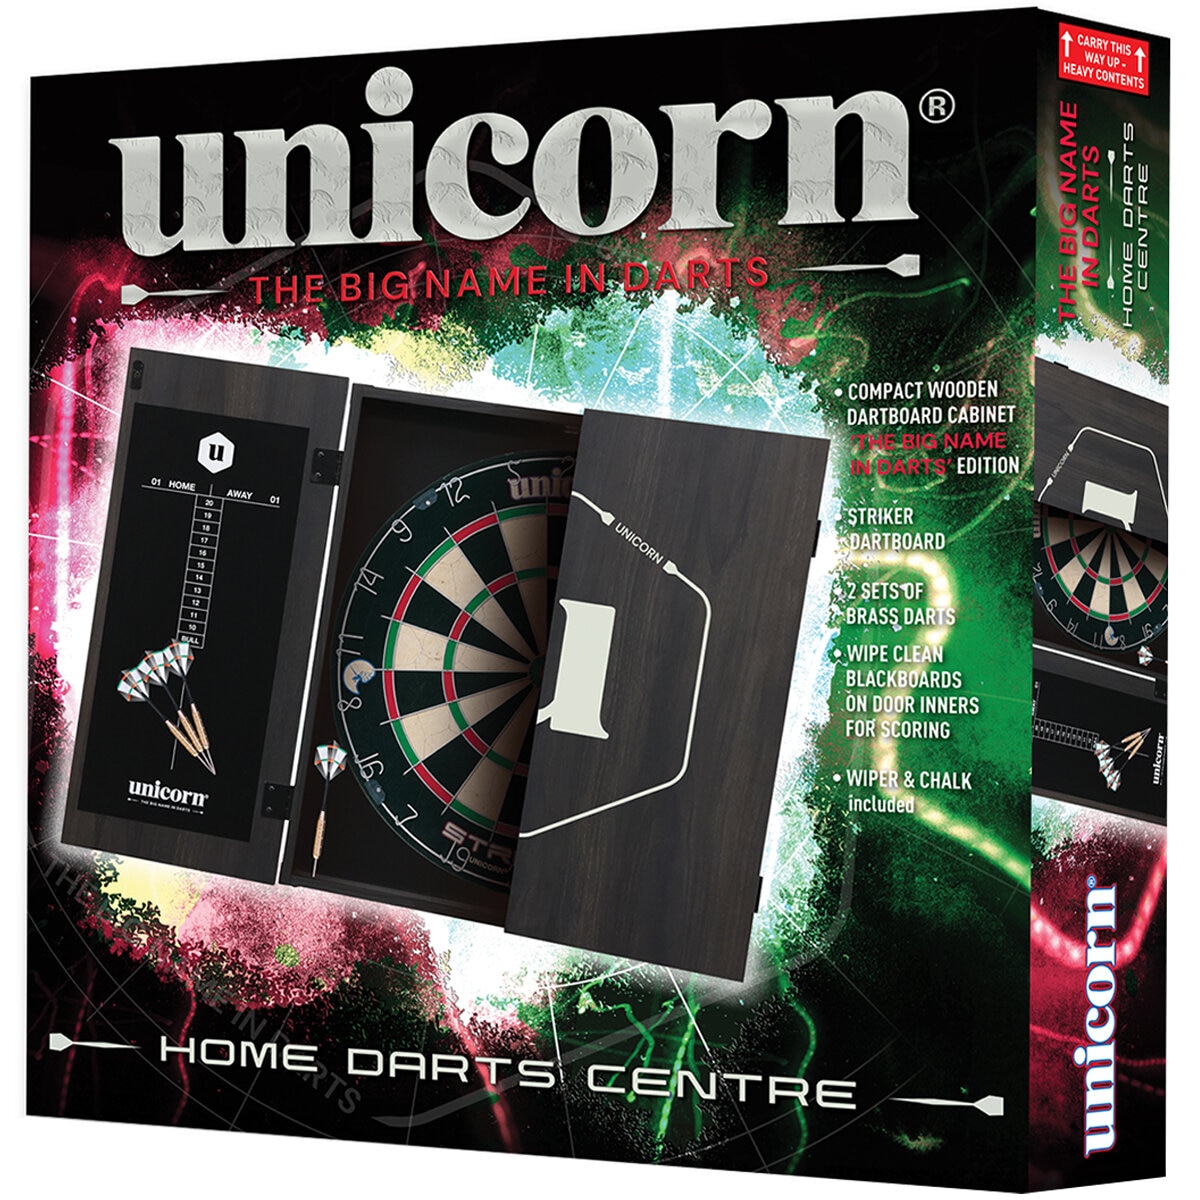 Unicorn Dart Centre Costco Australia | Maestro